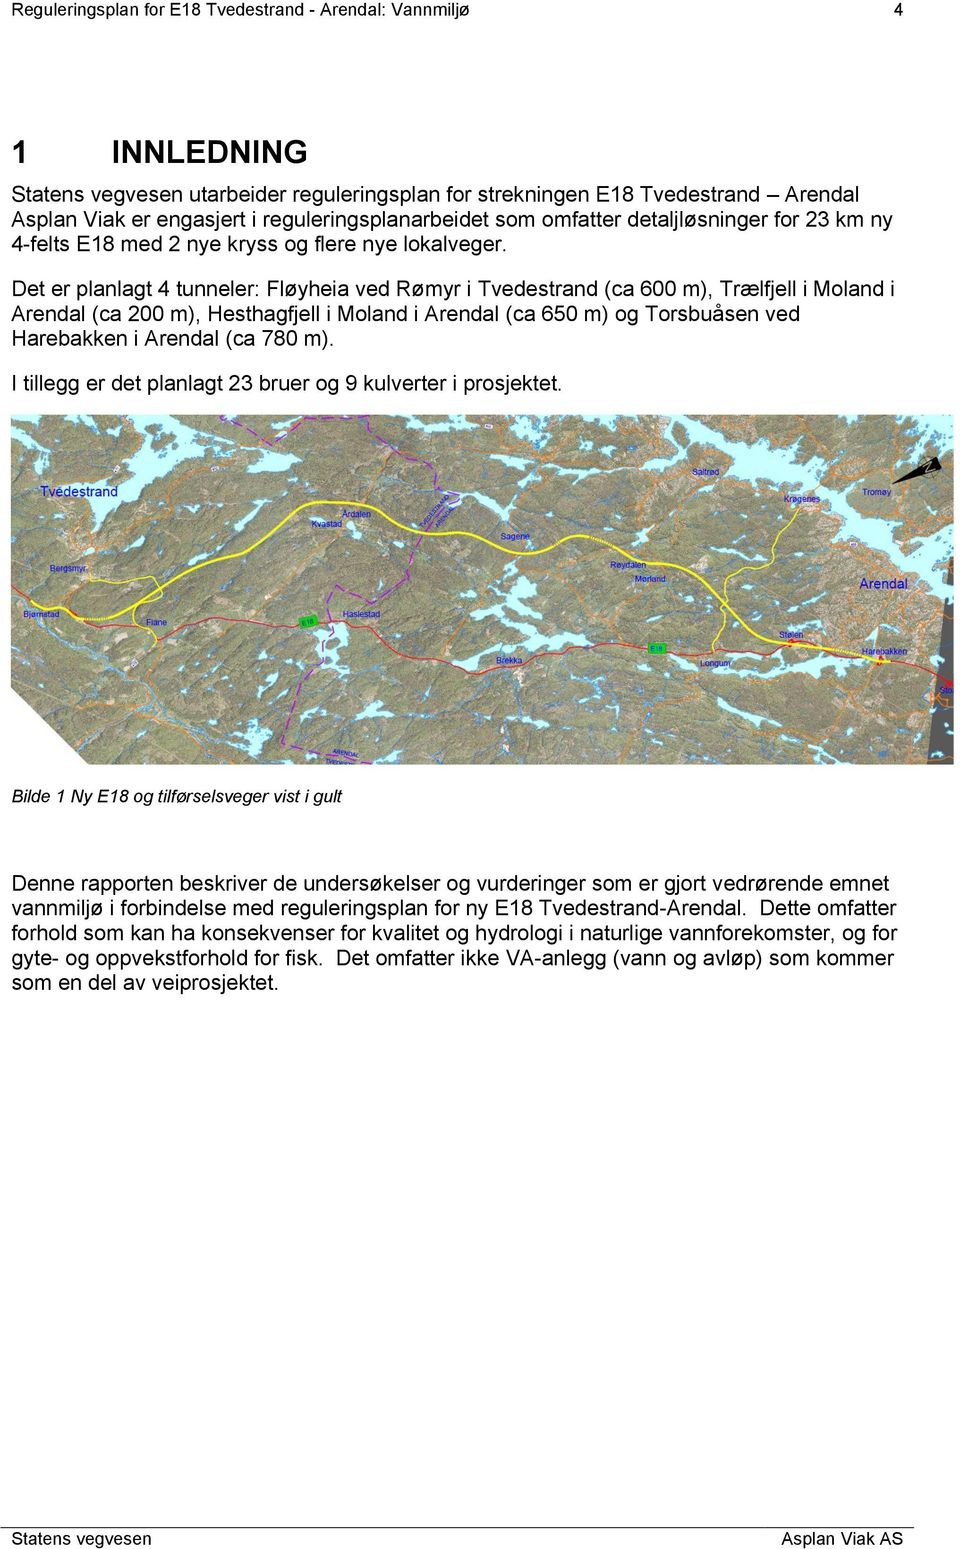 Det er planlagt 4 tunneler: Fløyheia ved Rømyr i Tvedestrand (ca 600 m), Trælfjell i Moland i Arendal (ca 200 m), Hesthagfjell i Moland i Arendal (ca 650 m) og Torsbuåsen ved Harebakken i Arendal (ca